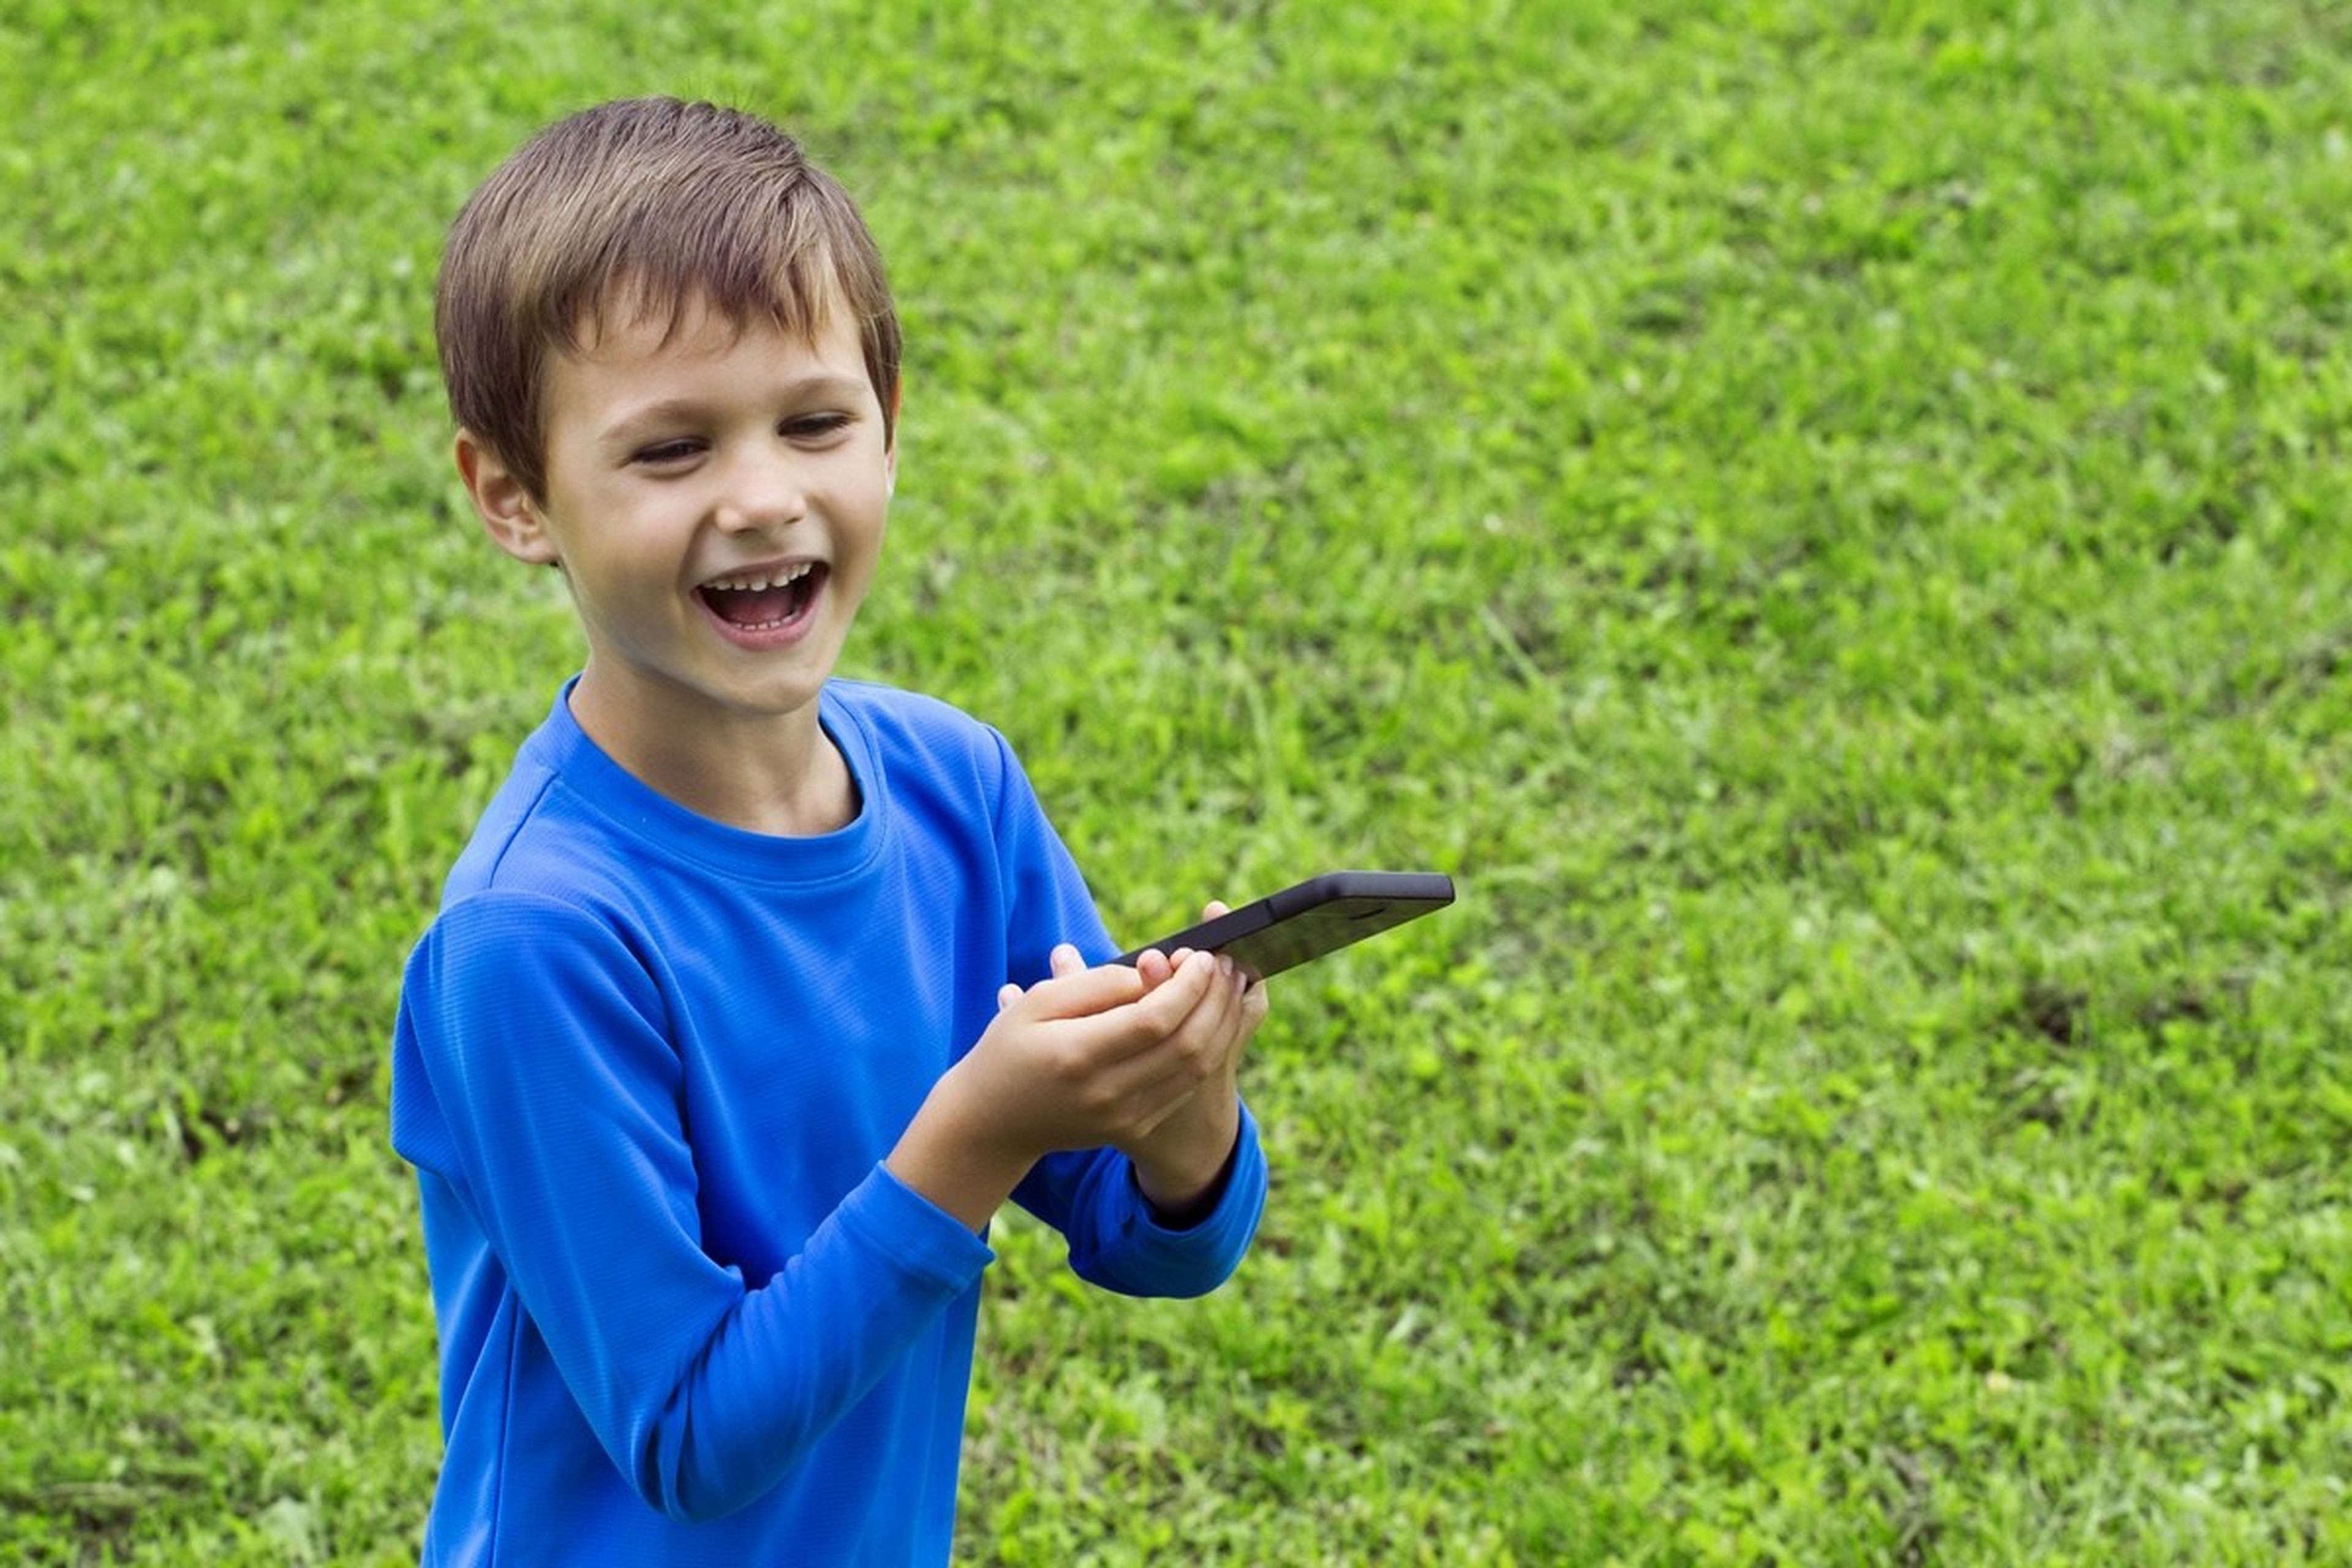 El truco de un niño de 7 años para saltarse el límite de uso del iPhone de su padre